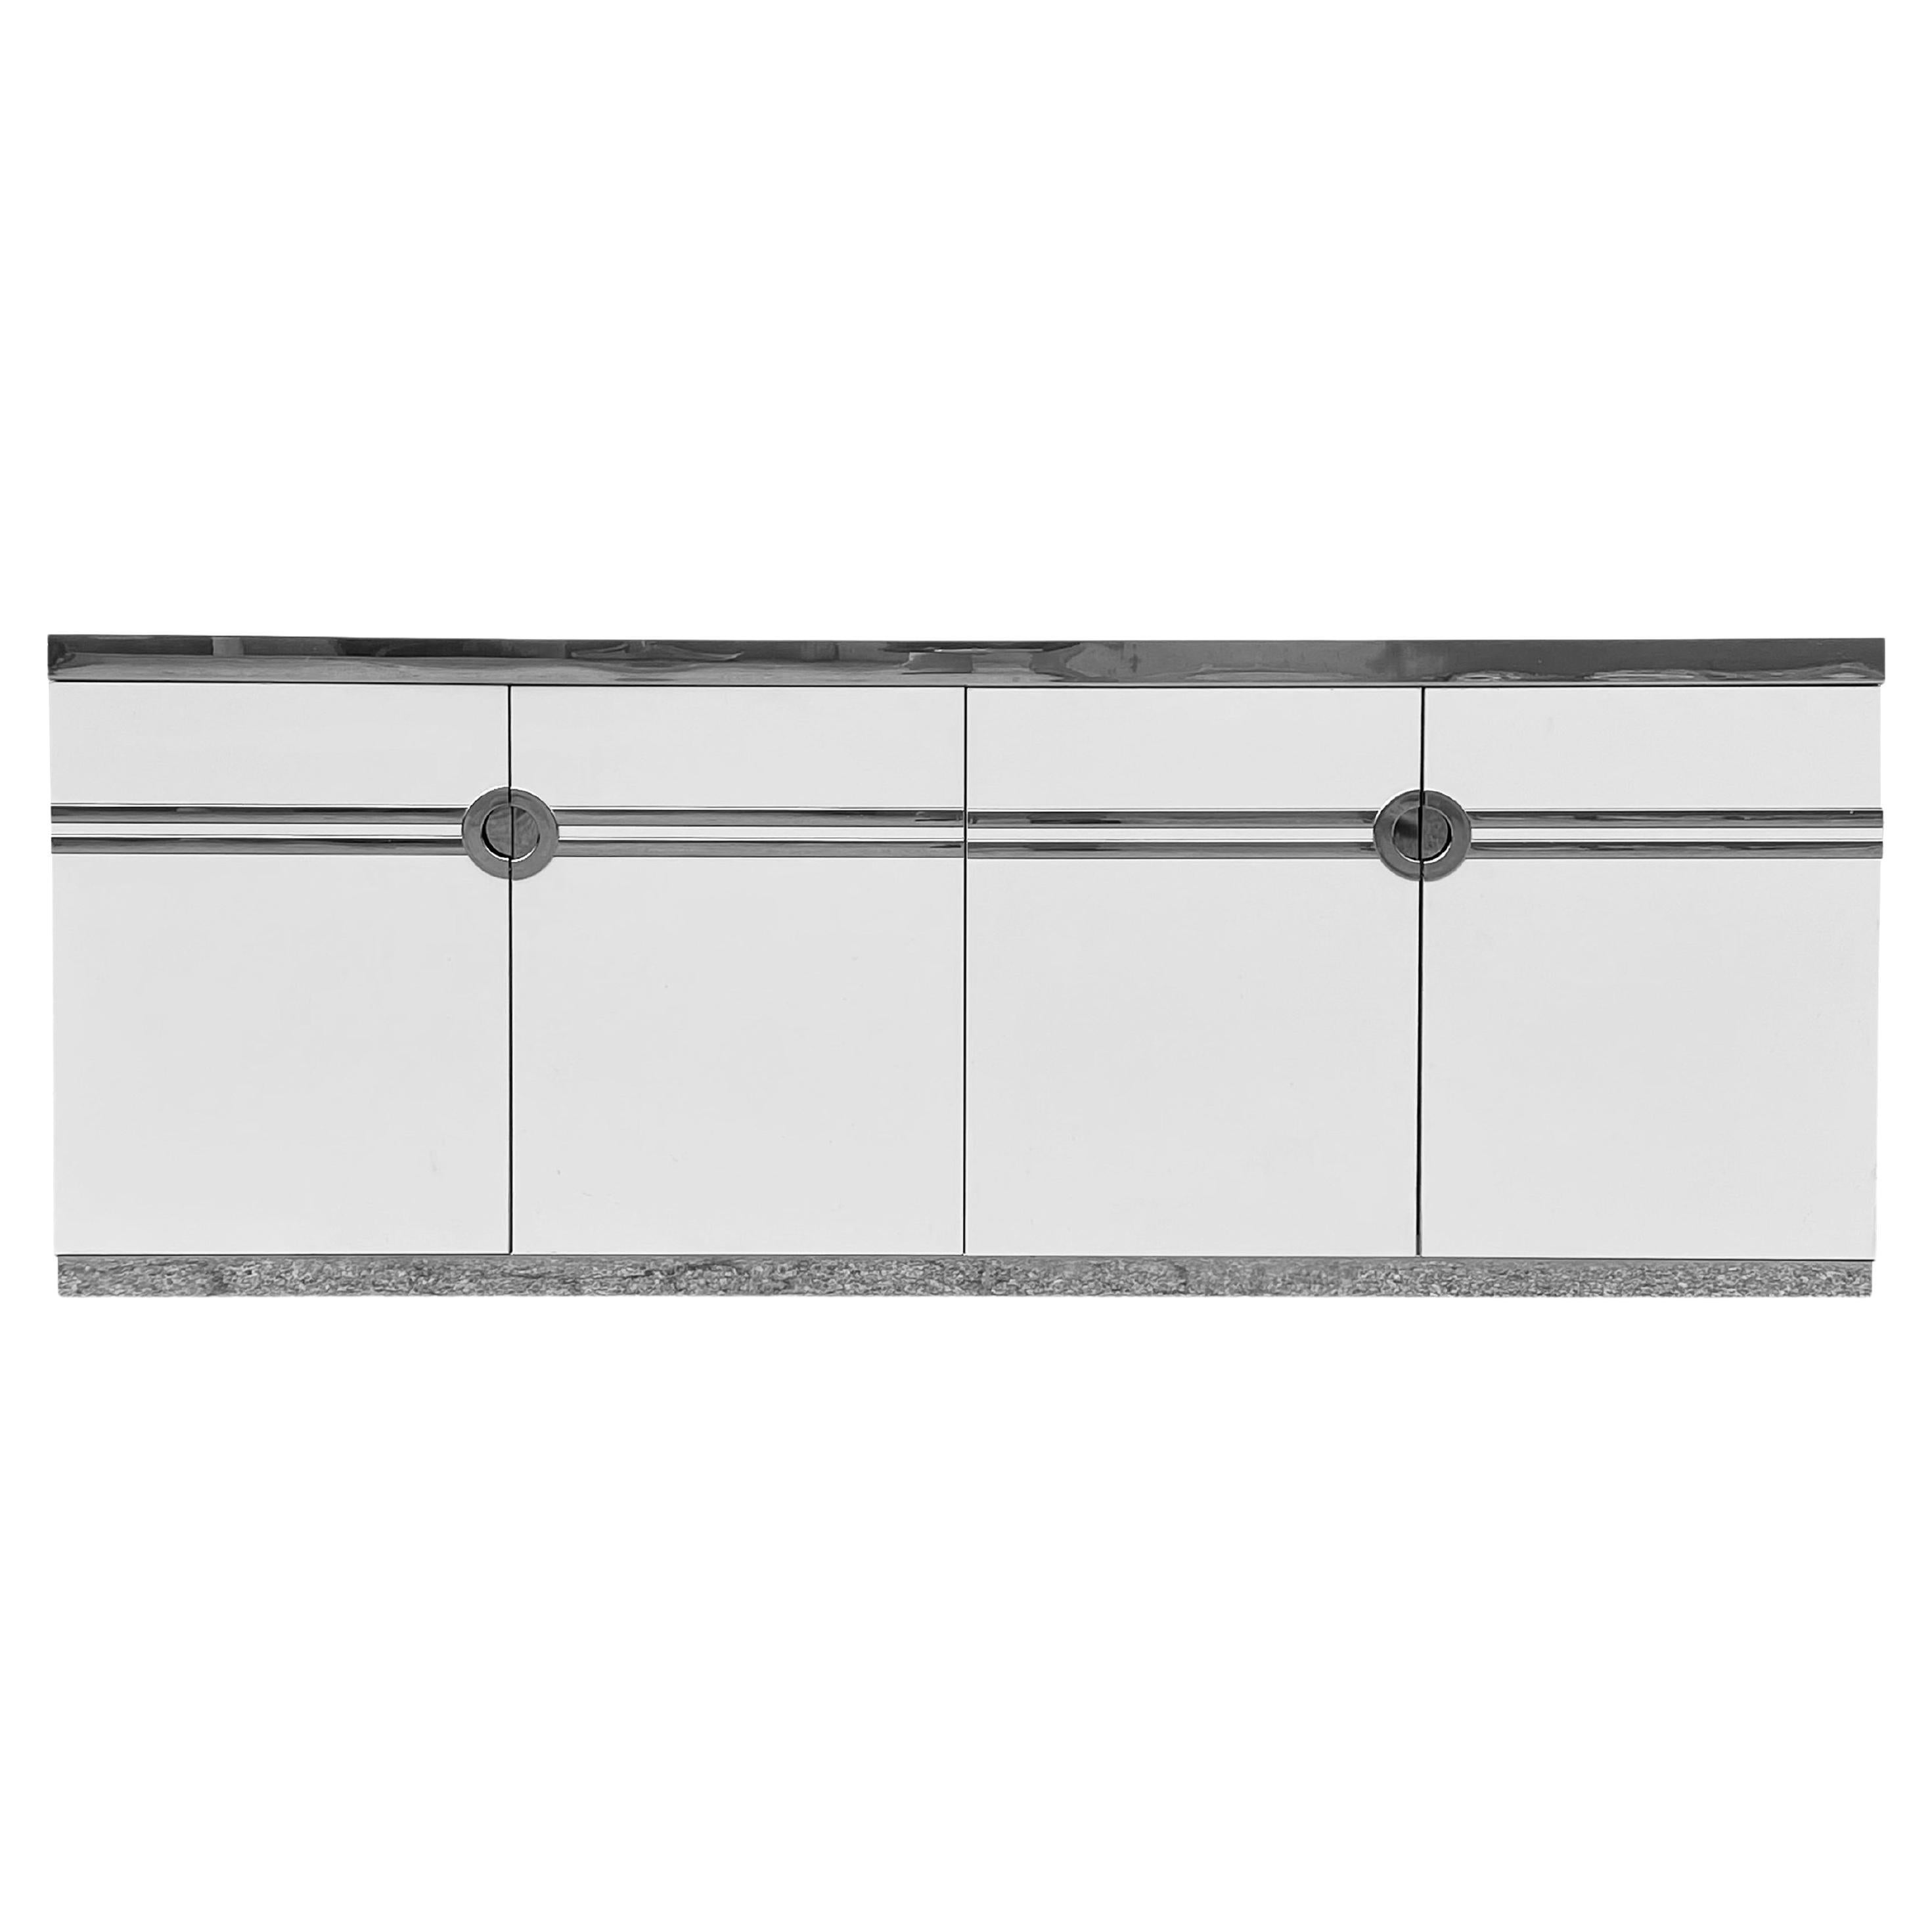 Pierre Cardin Long Dresser / Cabinet For Sale